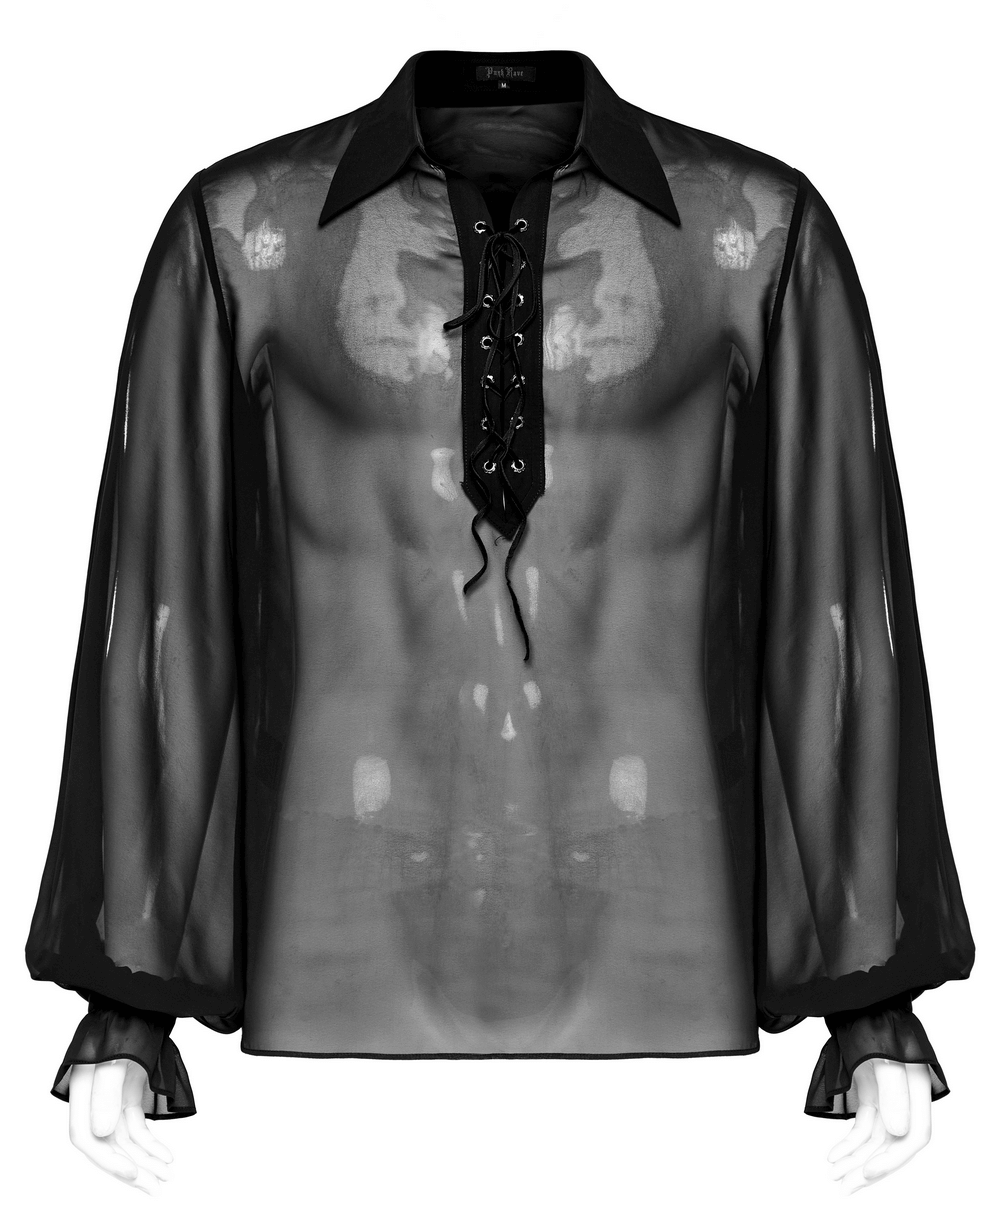 Camisa gótica para hombre: gasa transparente con cordones en la parte delantera